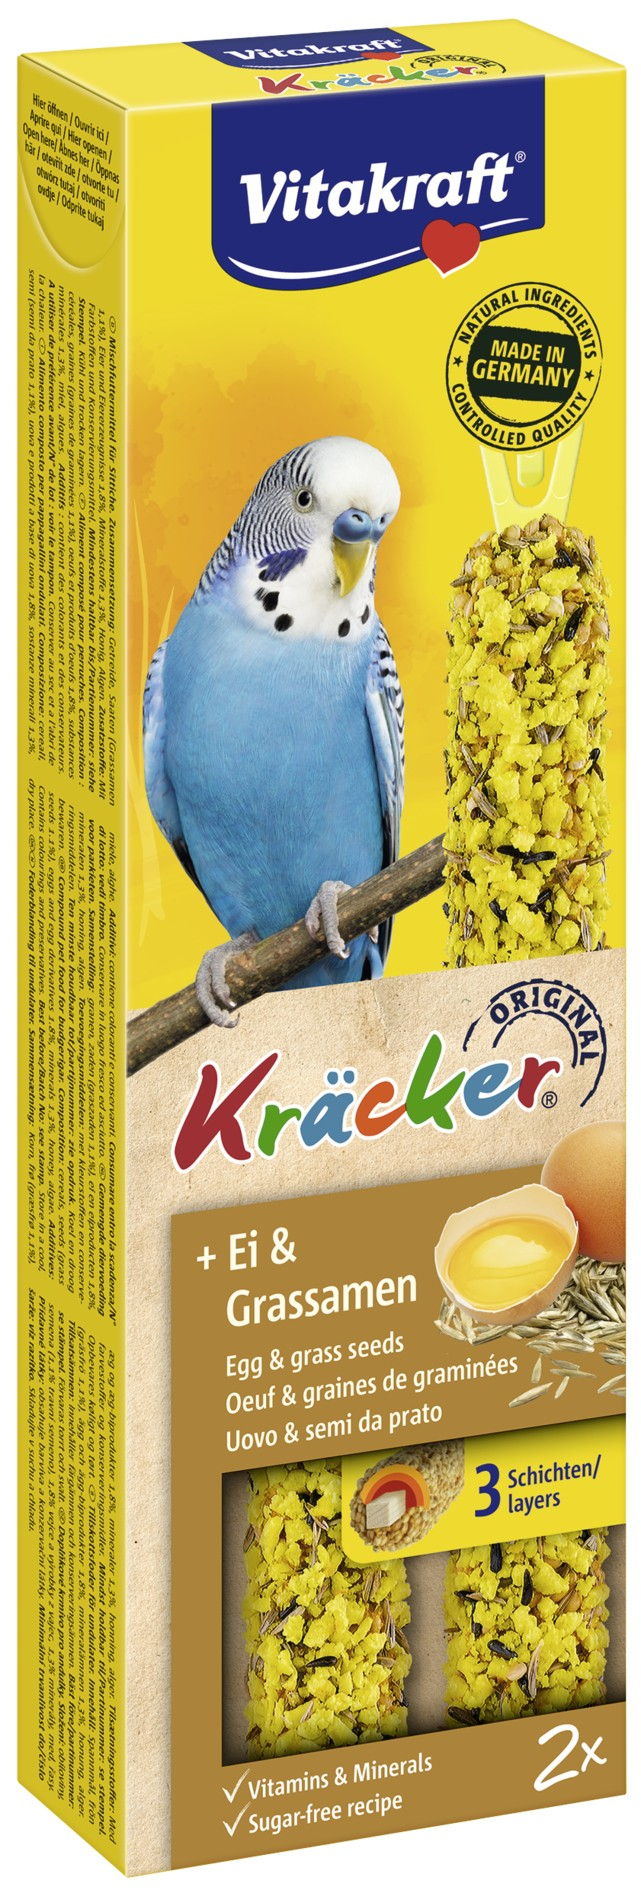 VITAKRAFT Kräcker Ei & Grassamen - Leckereien für Sittiche -